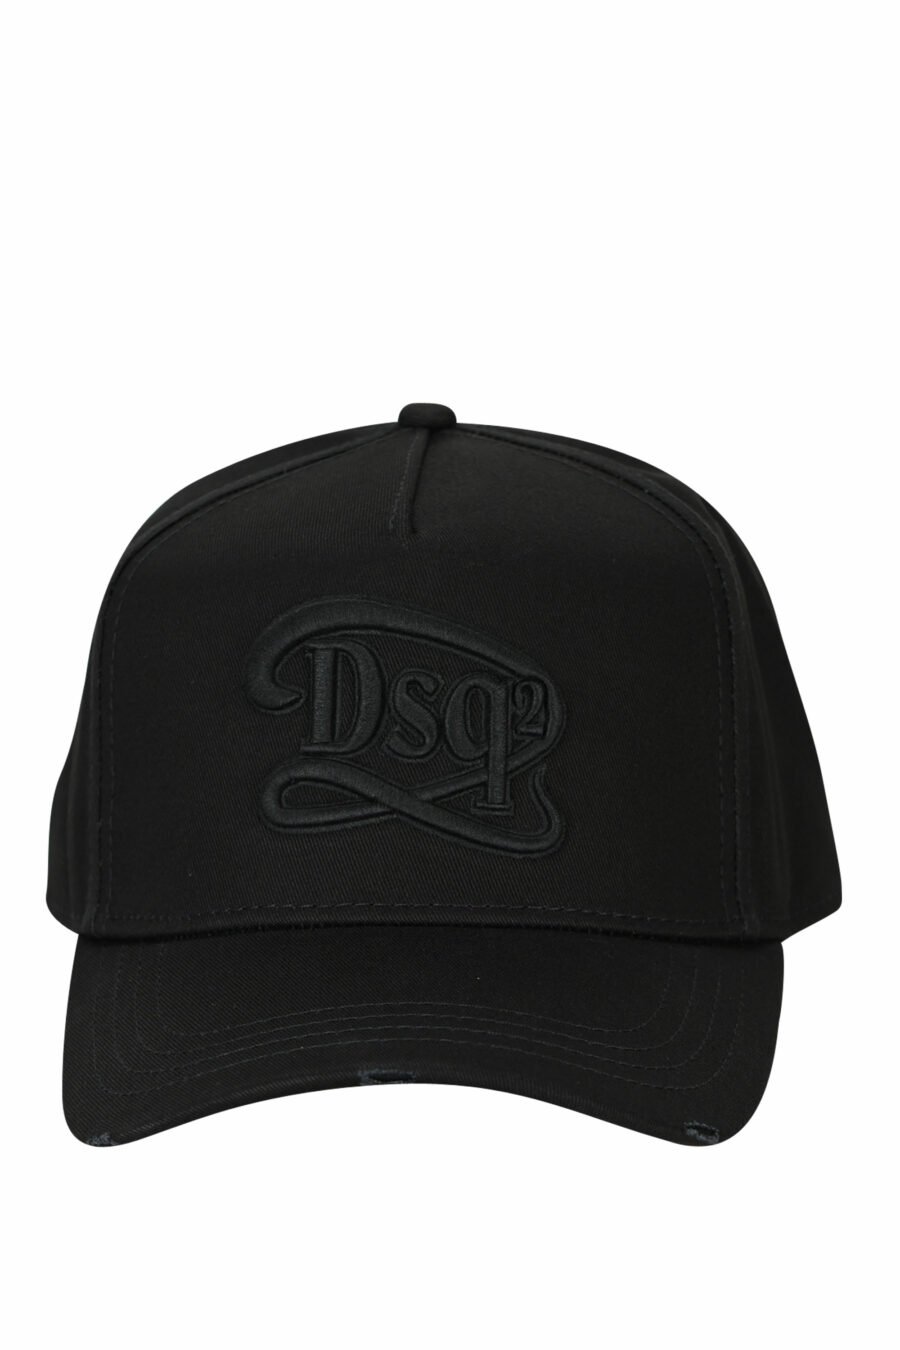 Gorra negra con logo "dsq2" en recuadro monocromático - 8055777286609